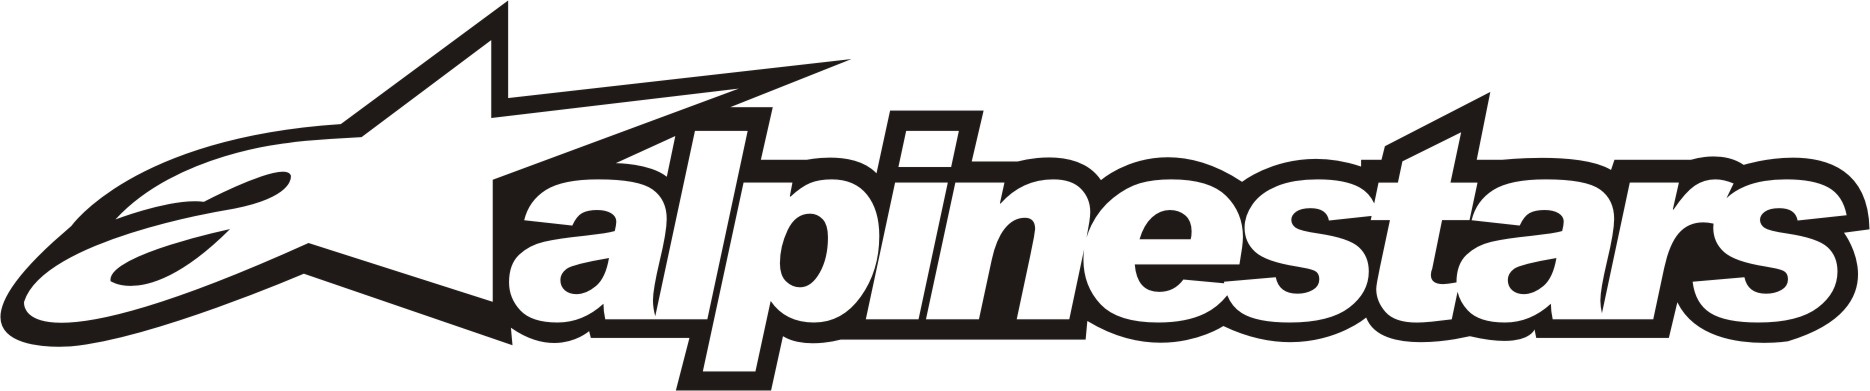 Alpinestar Logo Wallpaper Alpinestars Logo 1870x391